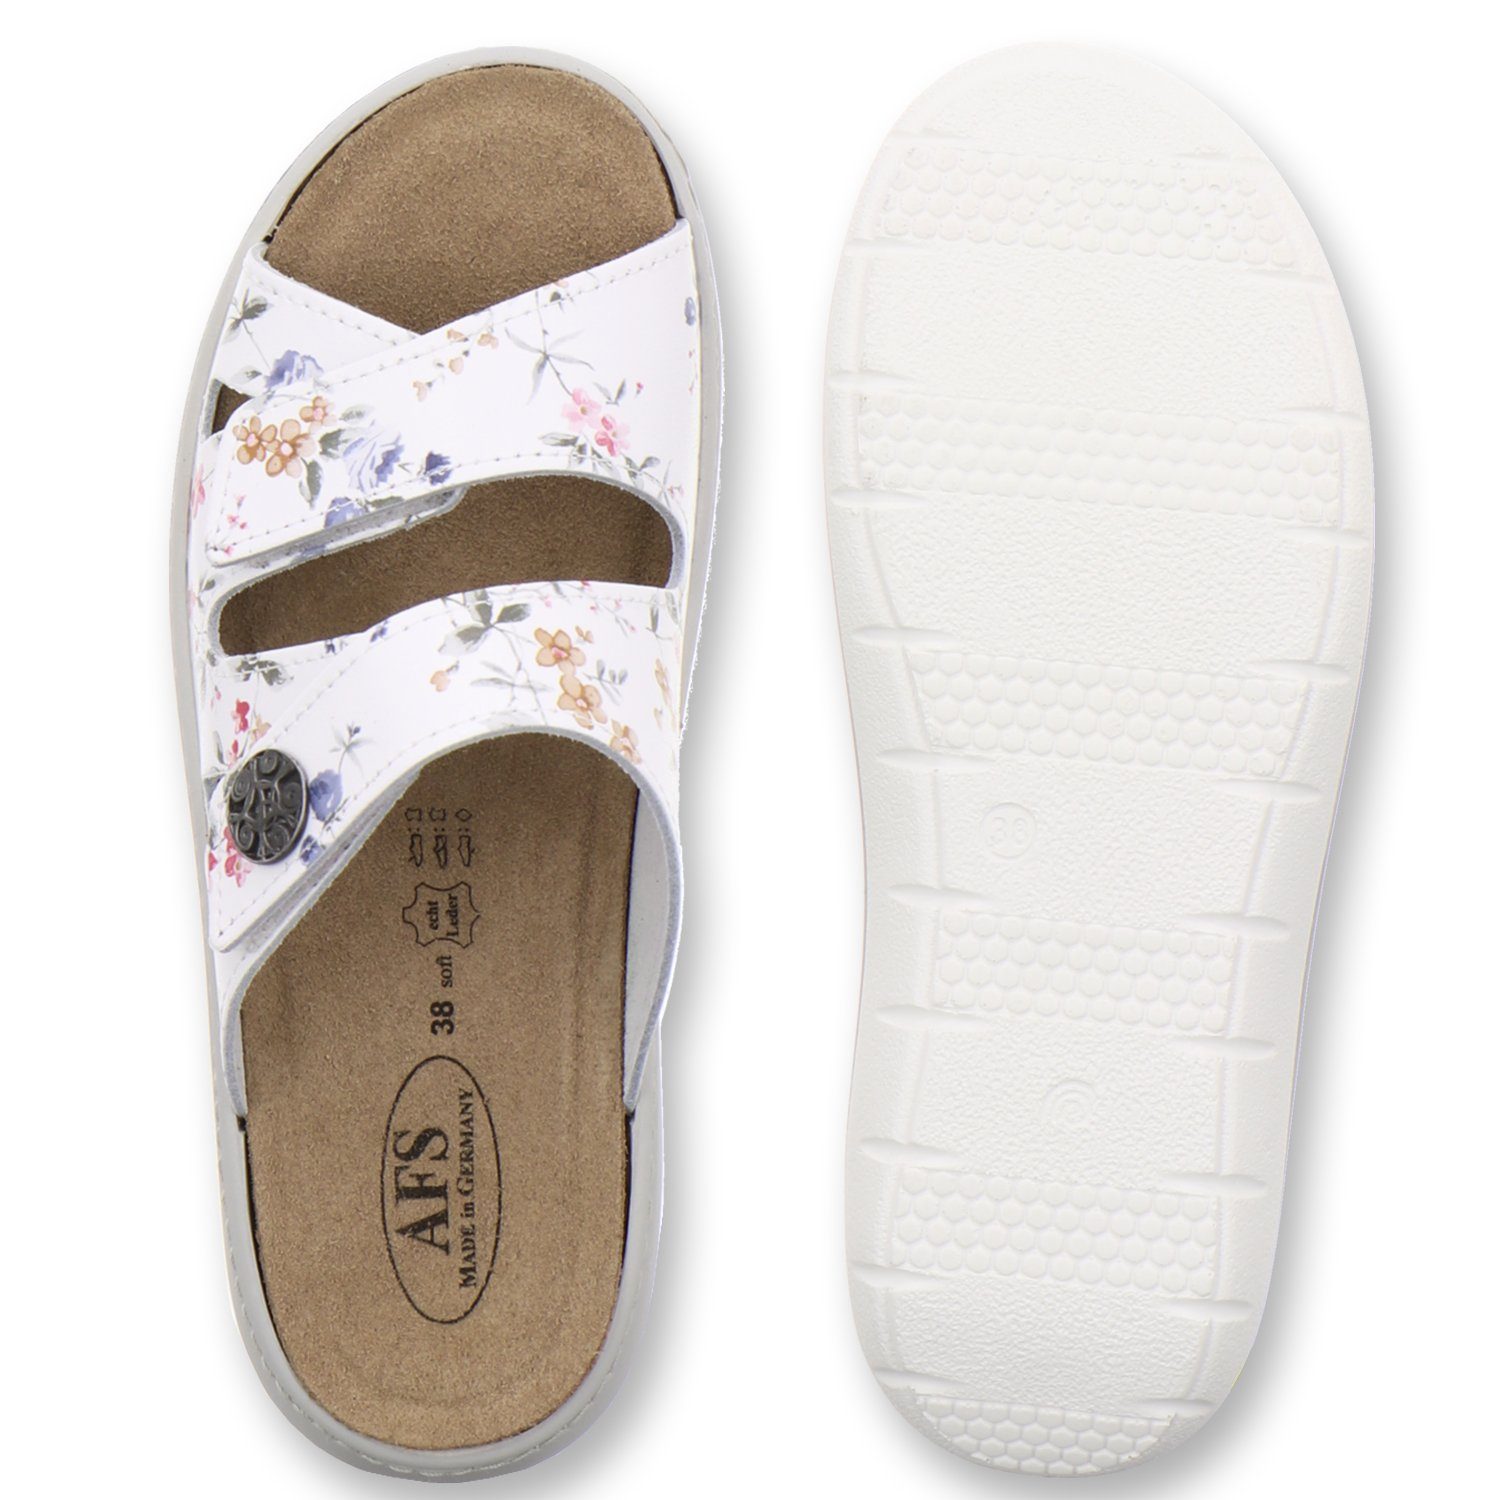 Germany 2808 Wechselfußbett, weiß-flower Made AFS-Schuhe in für Leder Damen Pantolette aus mit